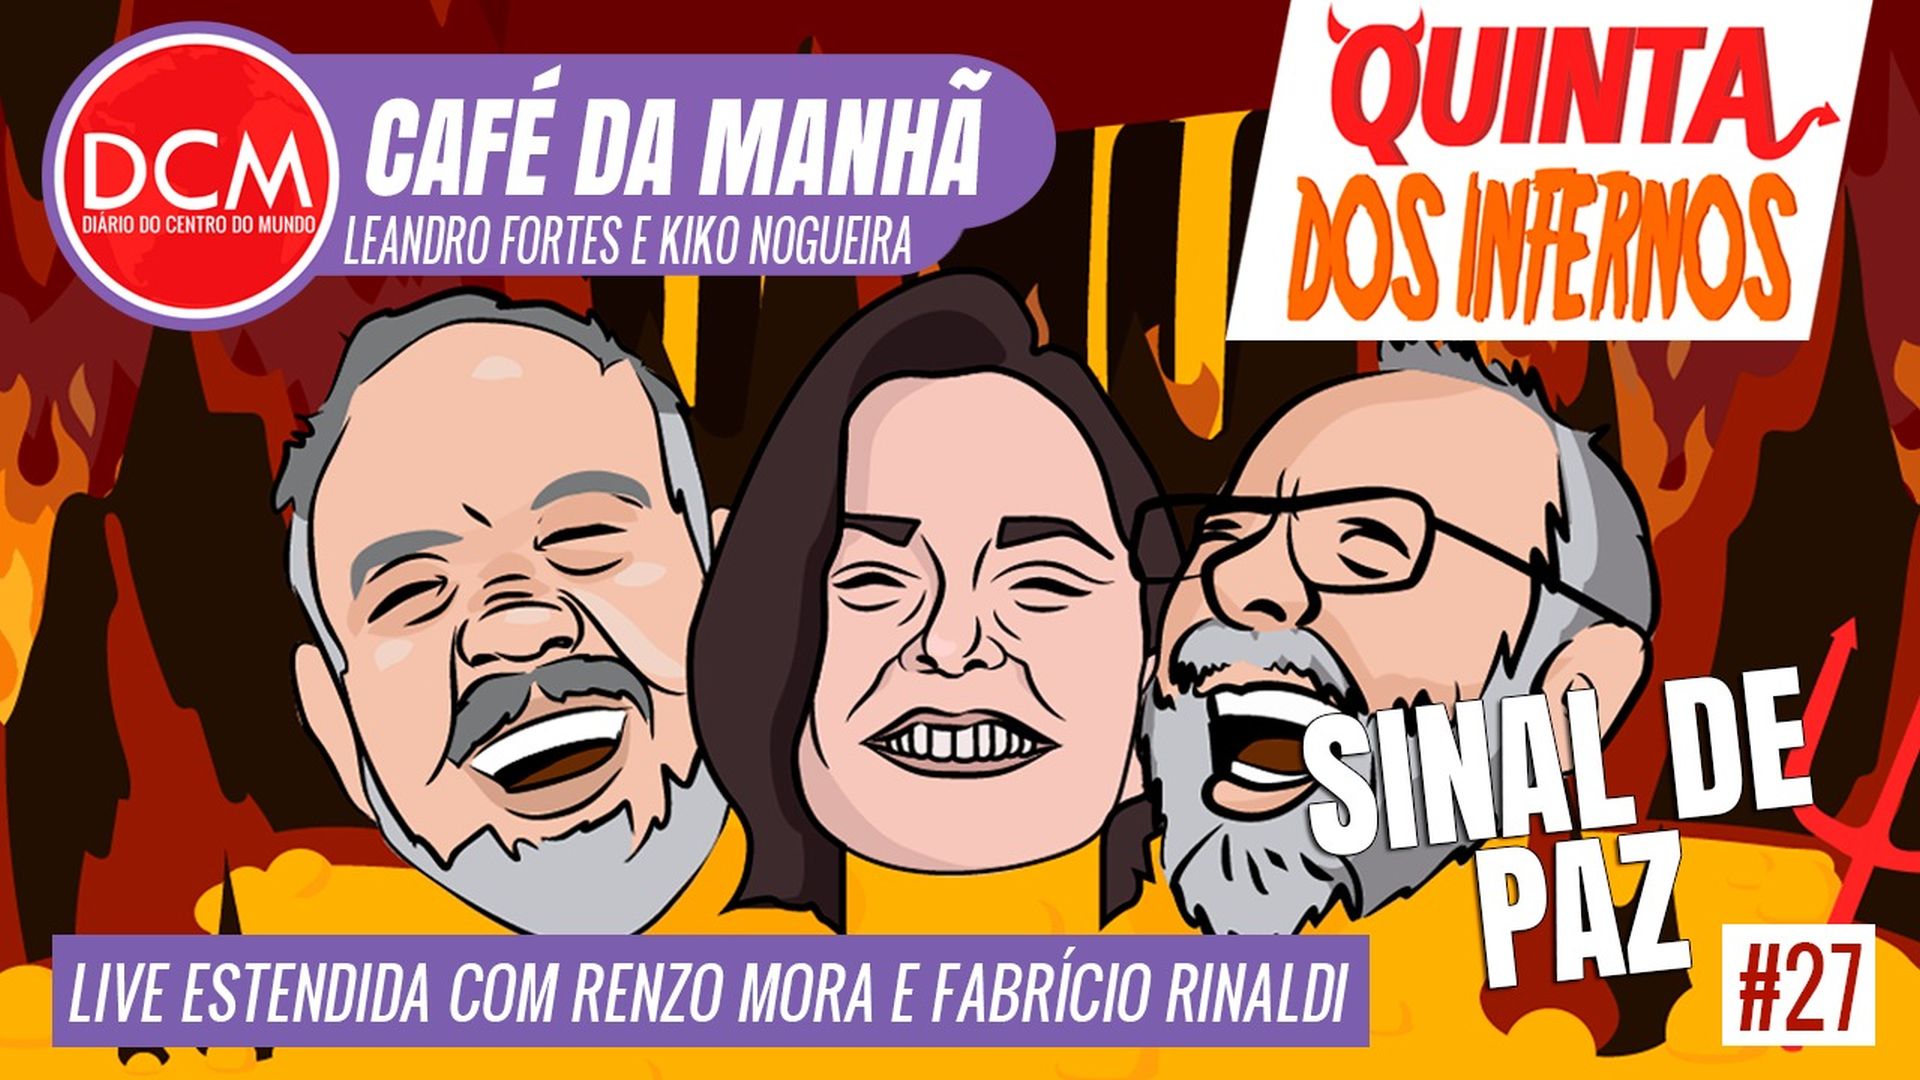 DCM Café da Manhã: Provável vice de Lula, Alckmin já recebe tratamento dado a petistas